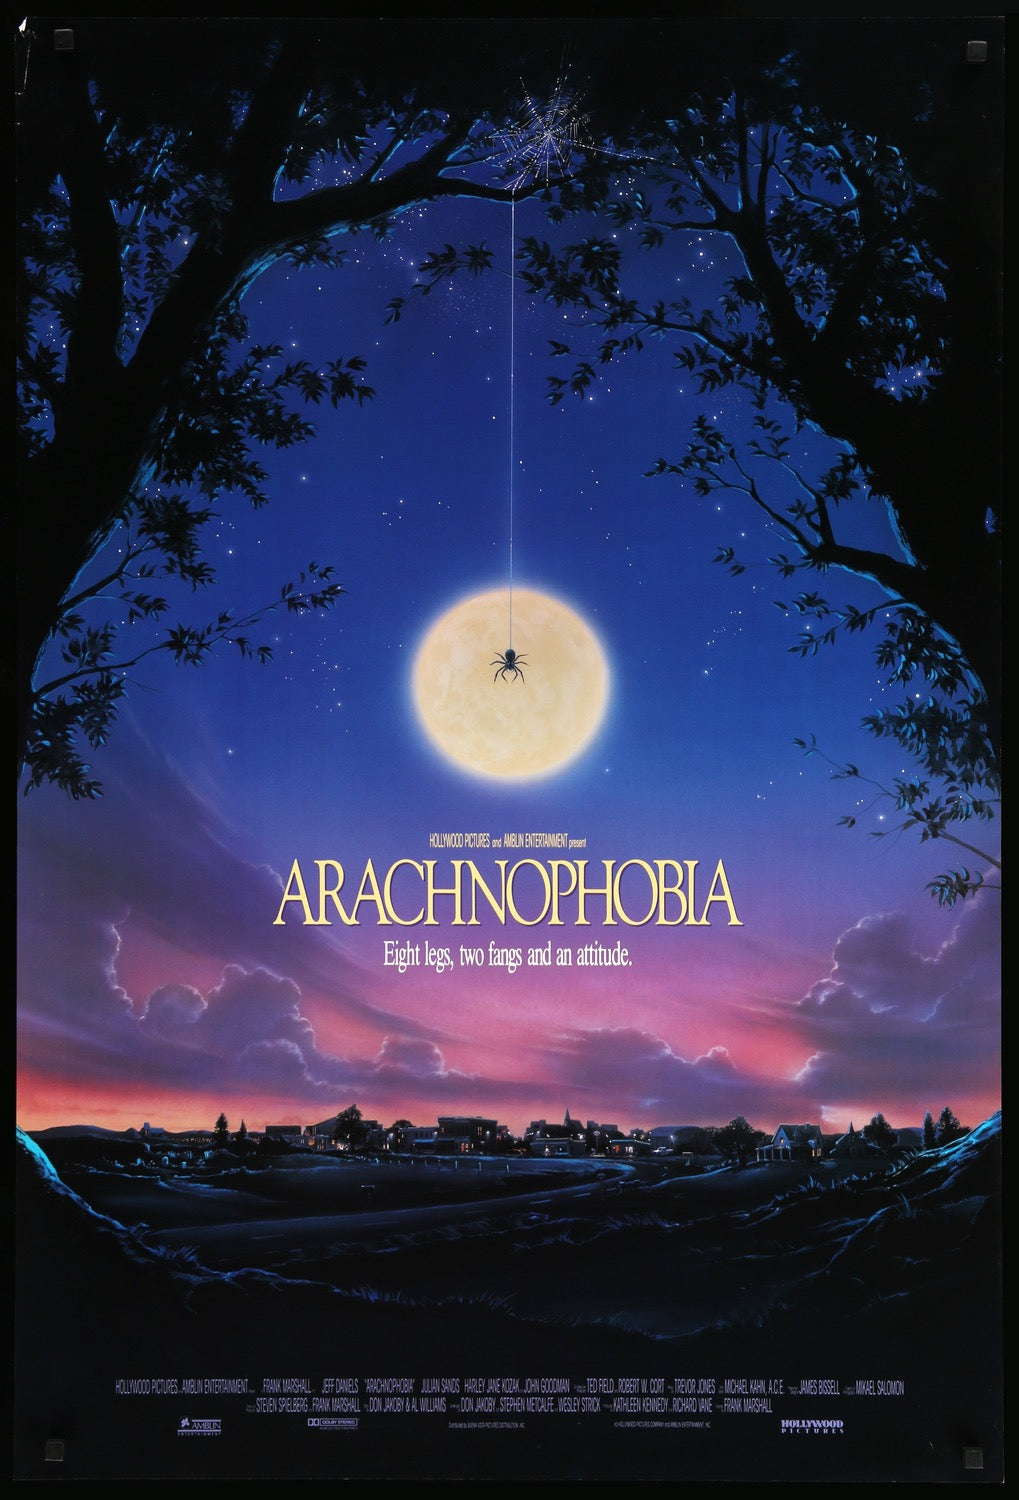 Arachnophobia (1990) original movie poster for sale at Original Film Art